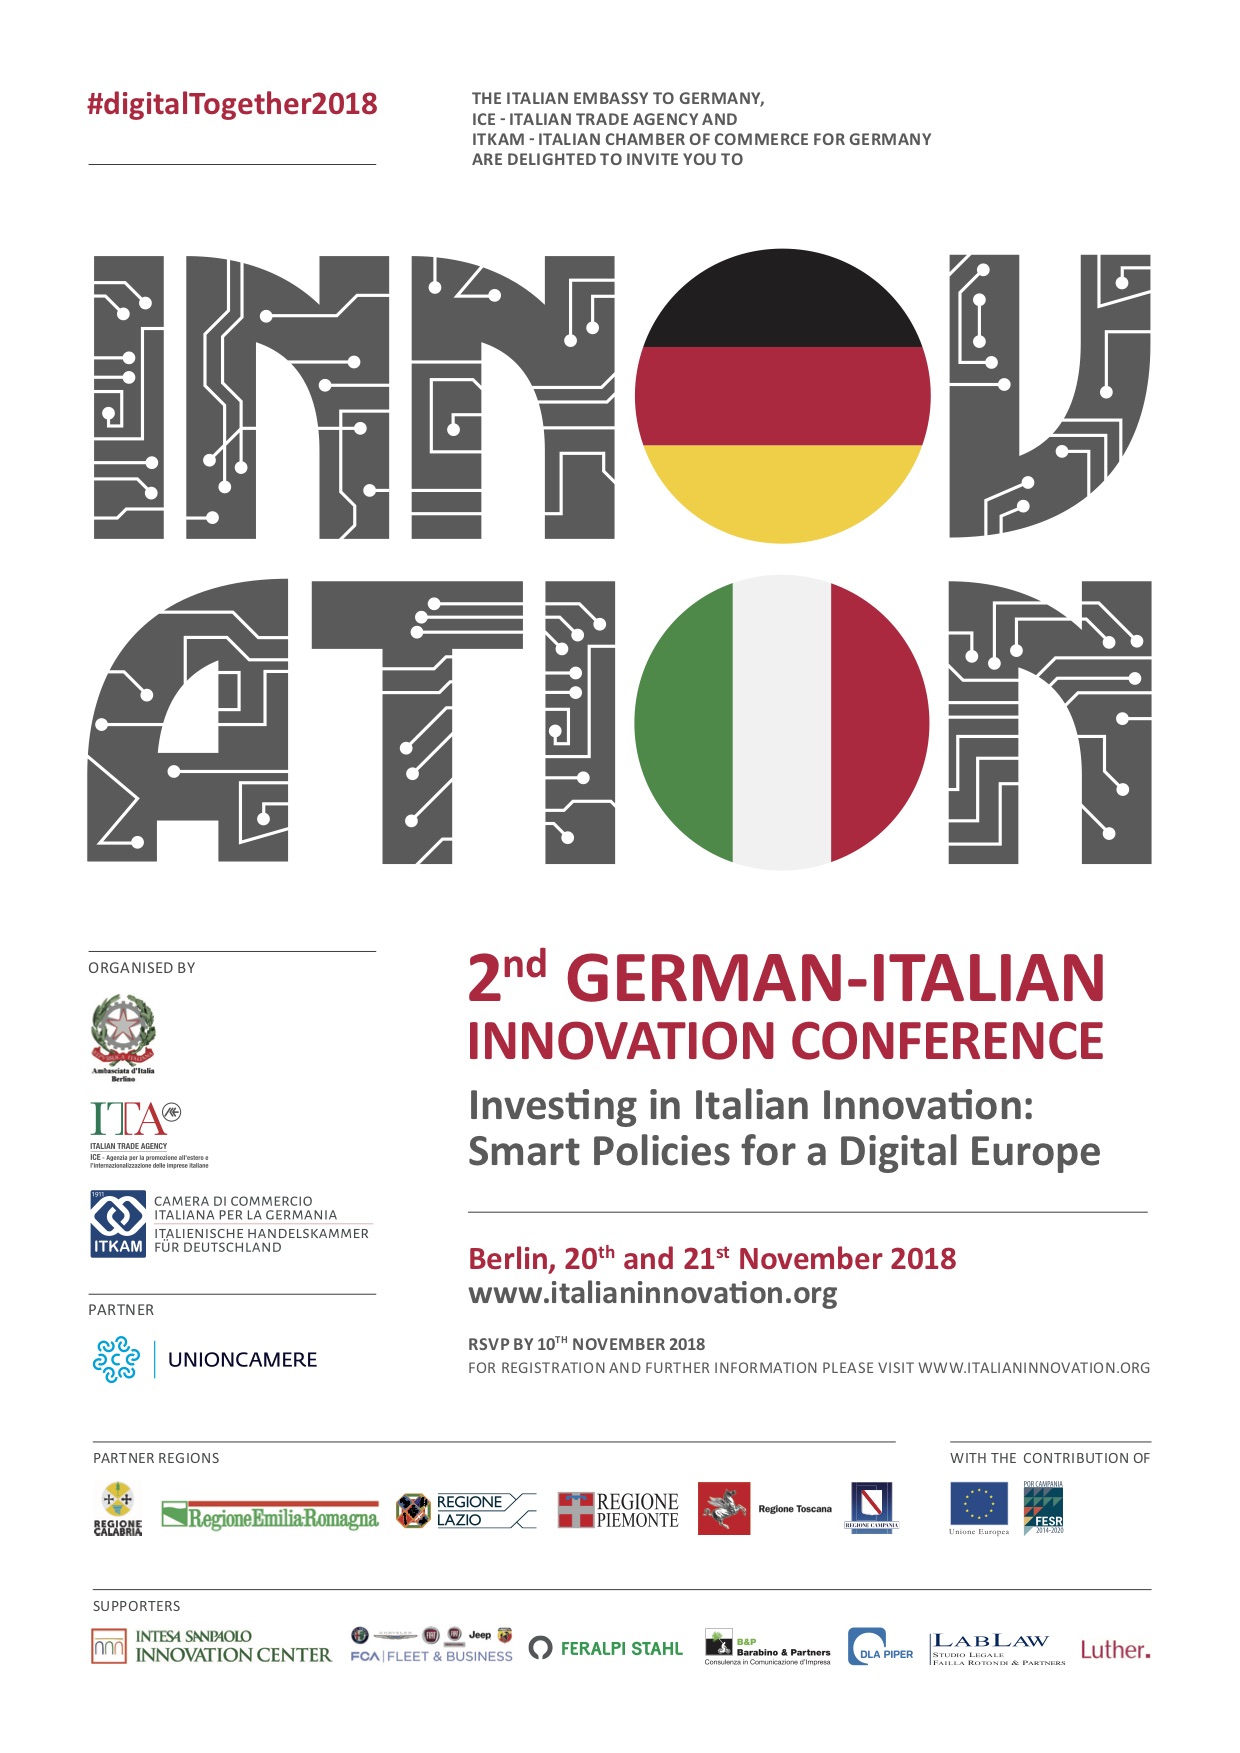 Digital innovation? Let's talk in Berlin!